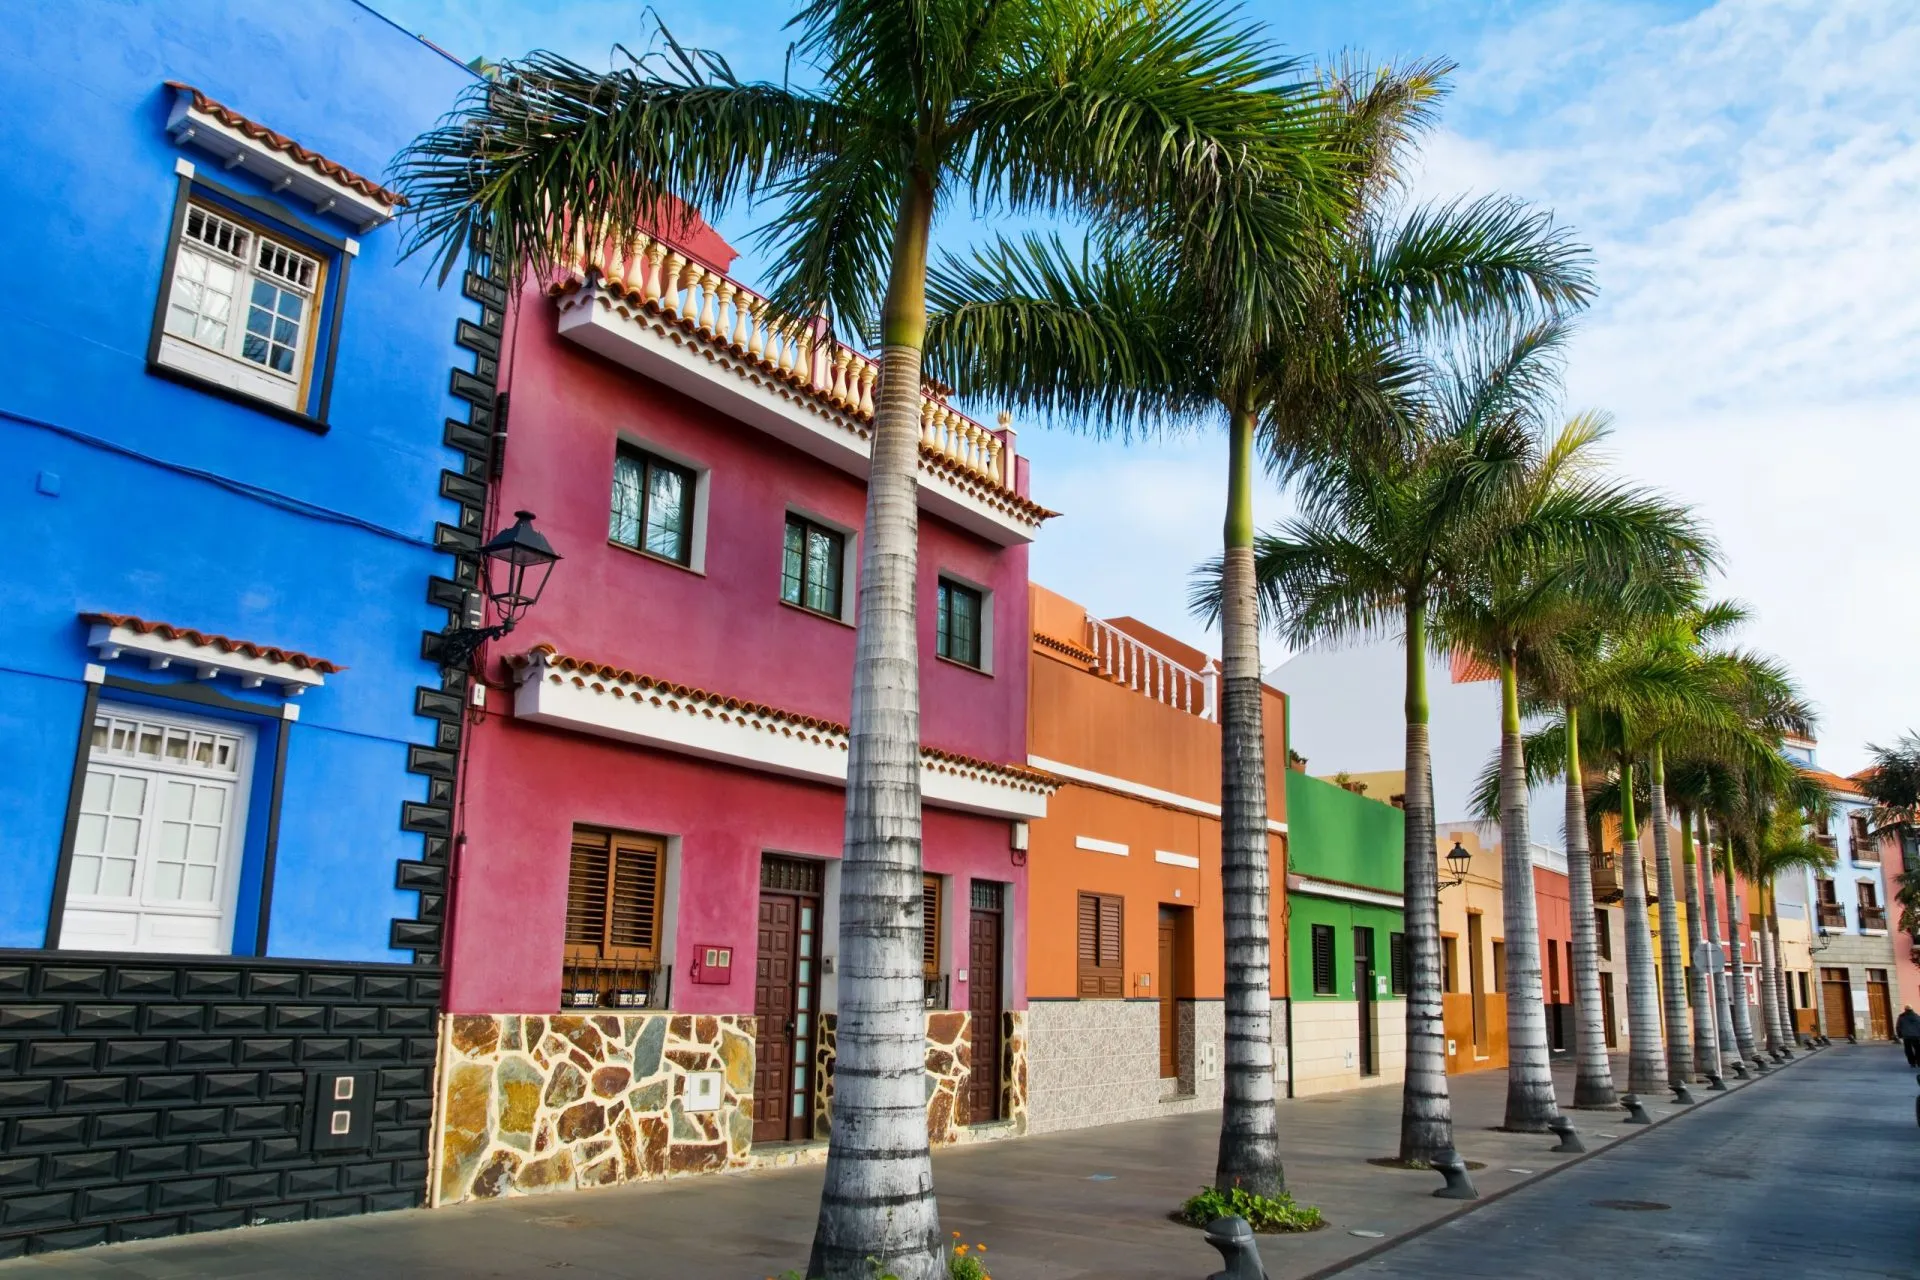 Farverige huse og palmer på gaden i Puerto de la Cruz, Tenerife, De Kanariske Øer.